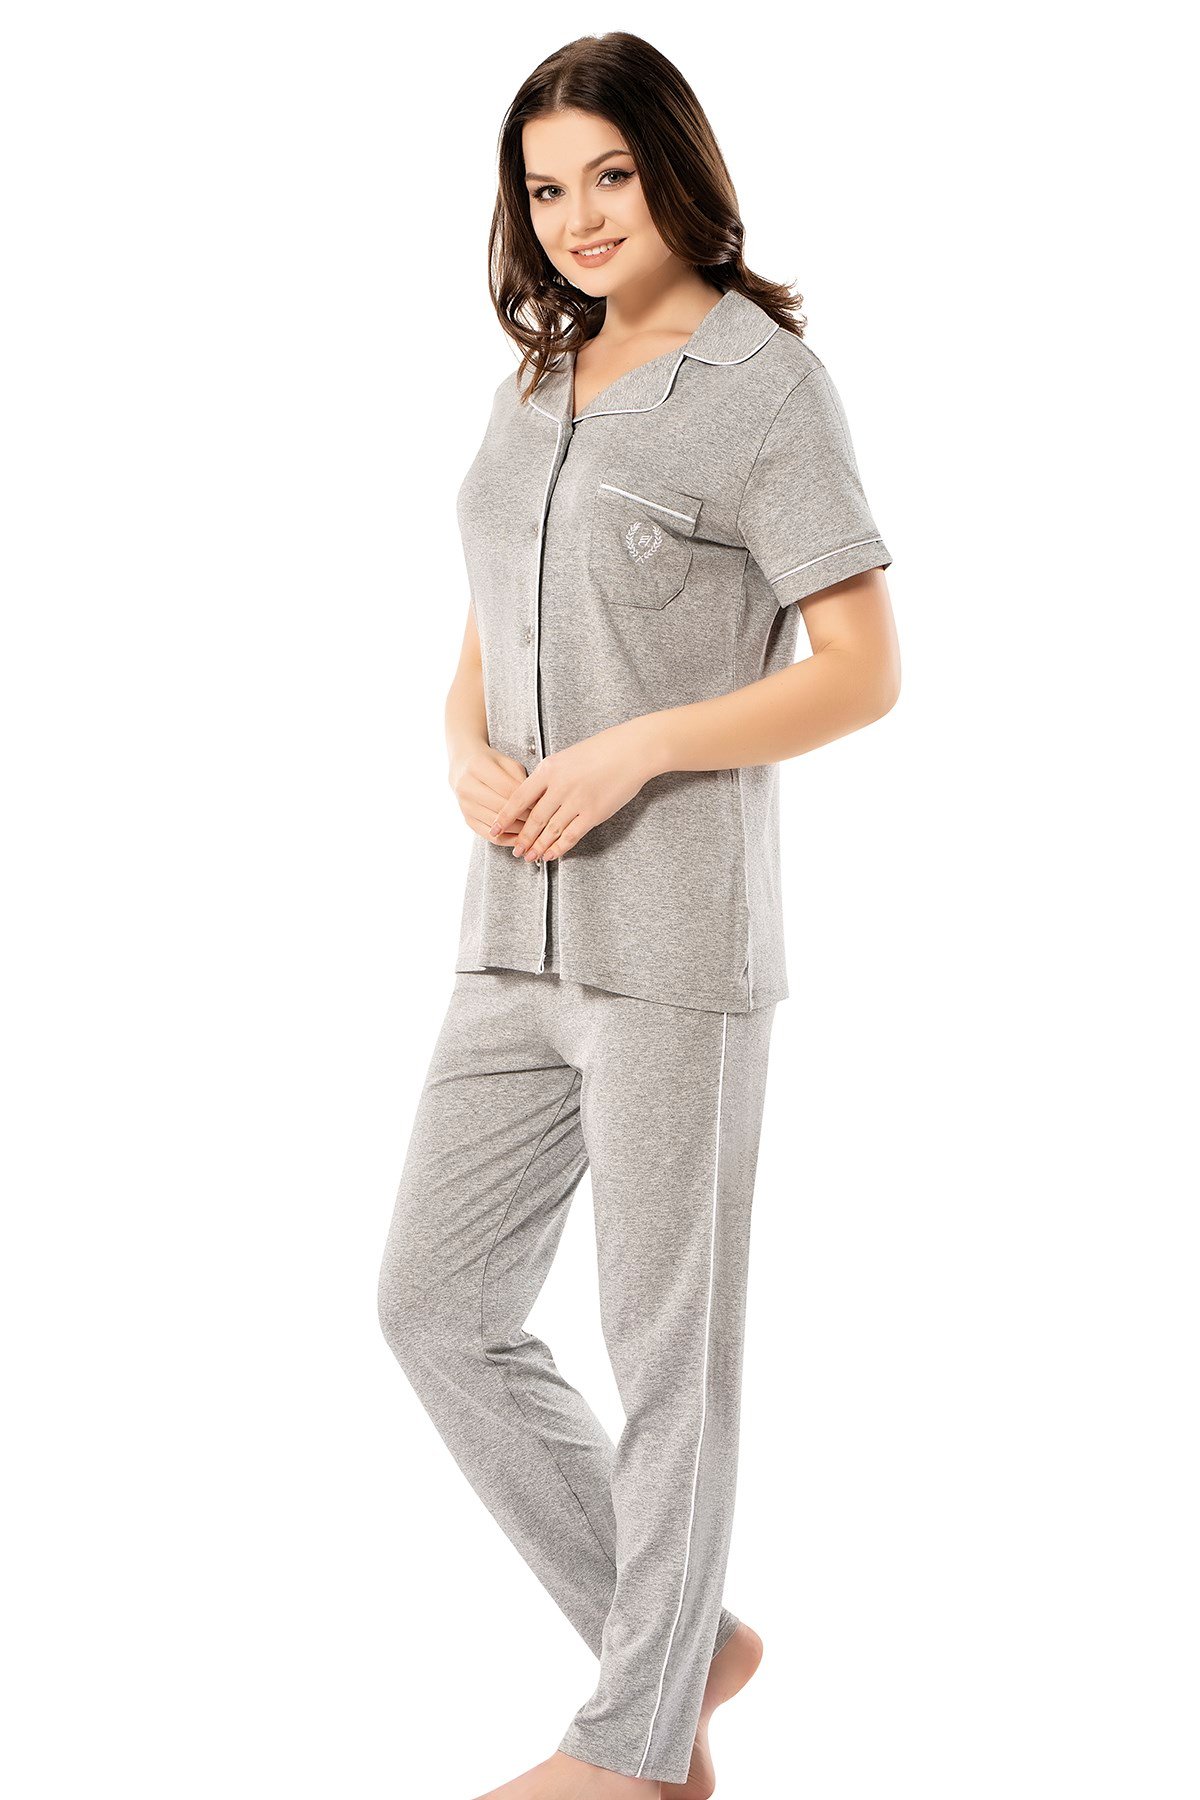 Erdem Kadın Yazlık Pijama Takımı: Erdem İç Giyim